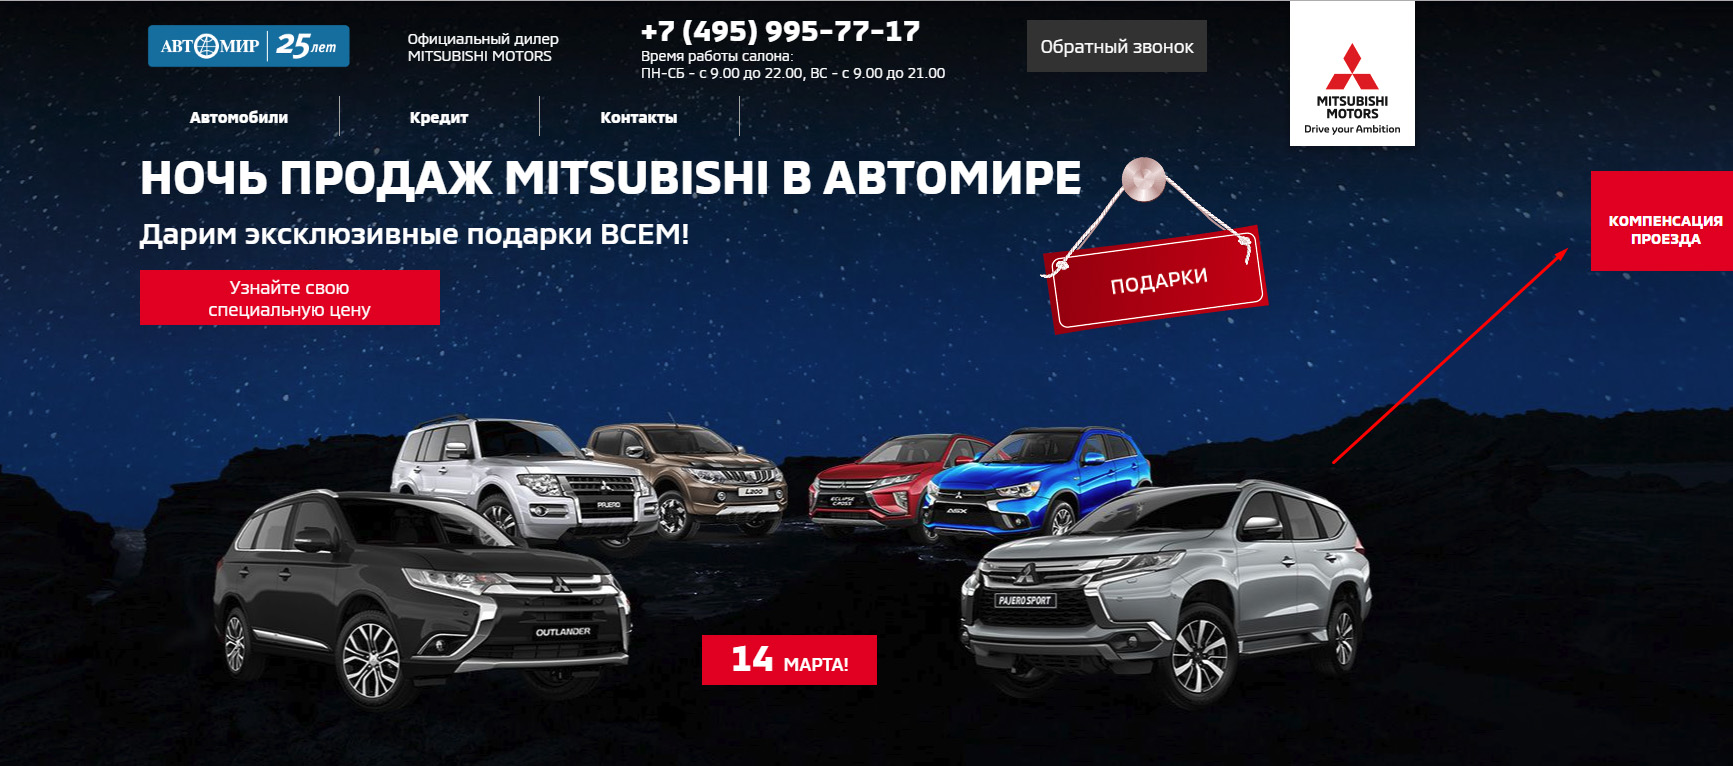 Запуск контекстной рекламы в Яндекс.Директе и Google Ads для автодилера Mitsubishi «Арконт» - рекомендации по сайту, компенсация проезда